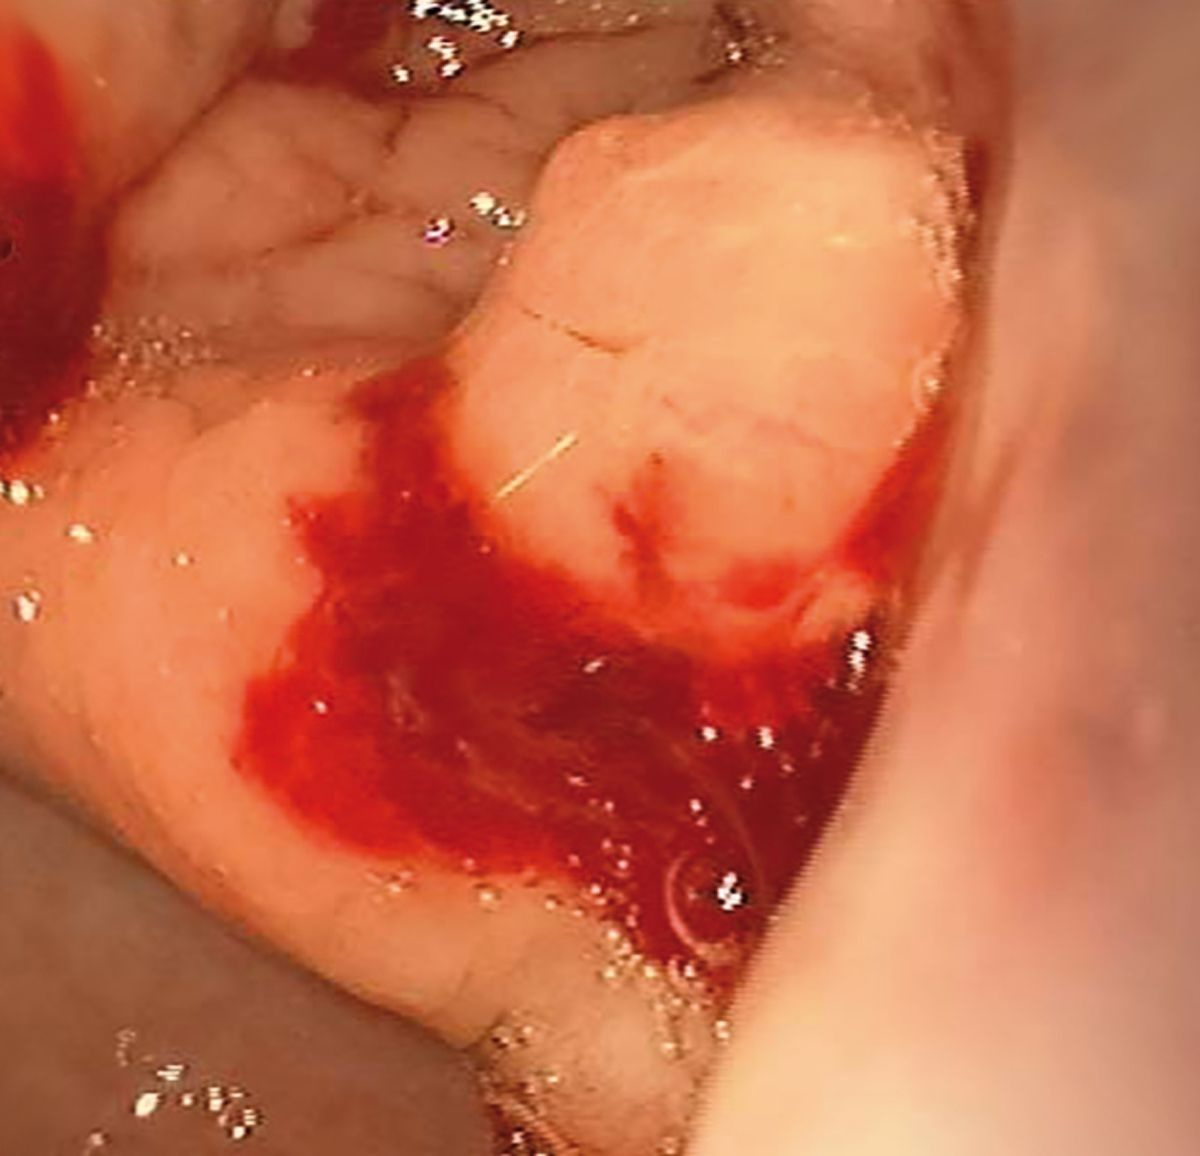 La endoscopia reveló alteraciones sugestivas de neoplasia gástrica. Nótese la incisura angular polipoide y engrosada con el sangrado posterior a la biopsia.